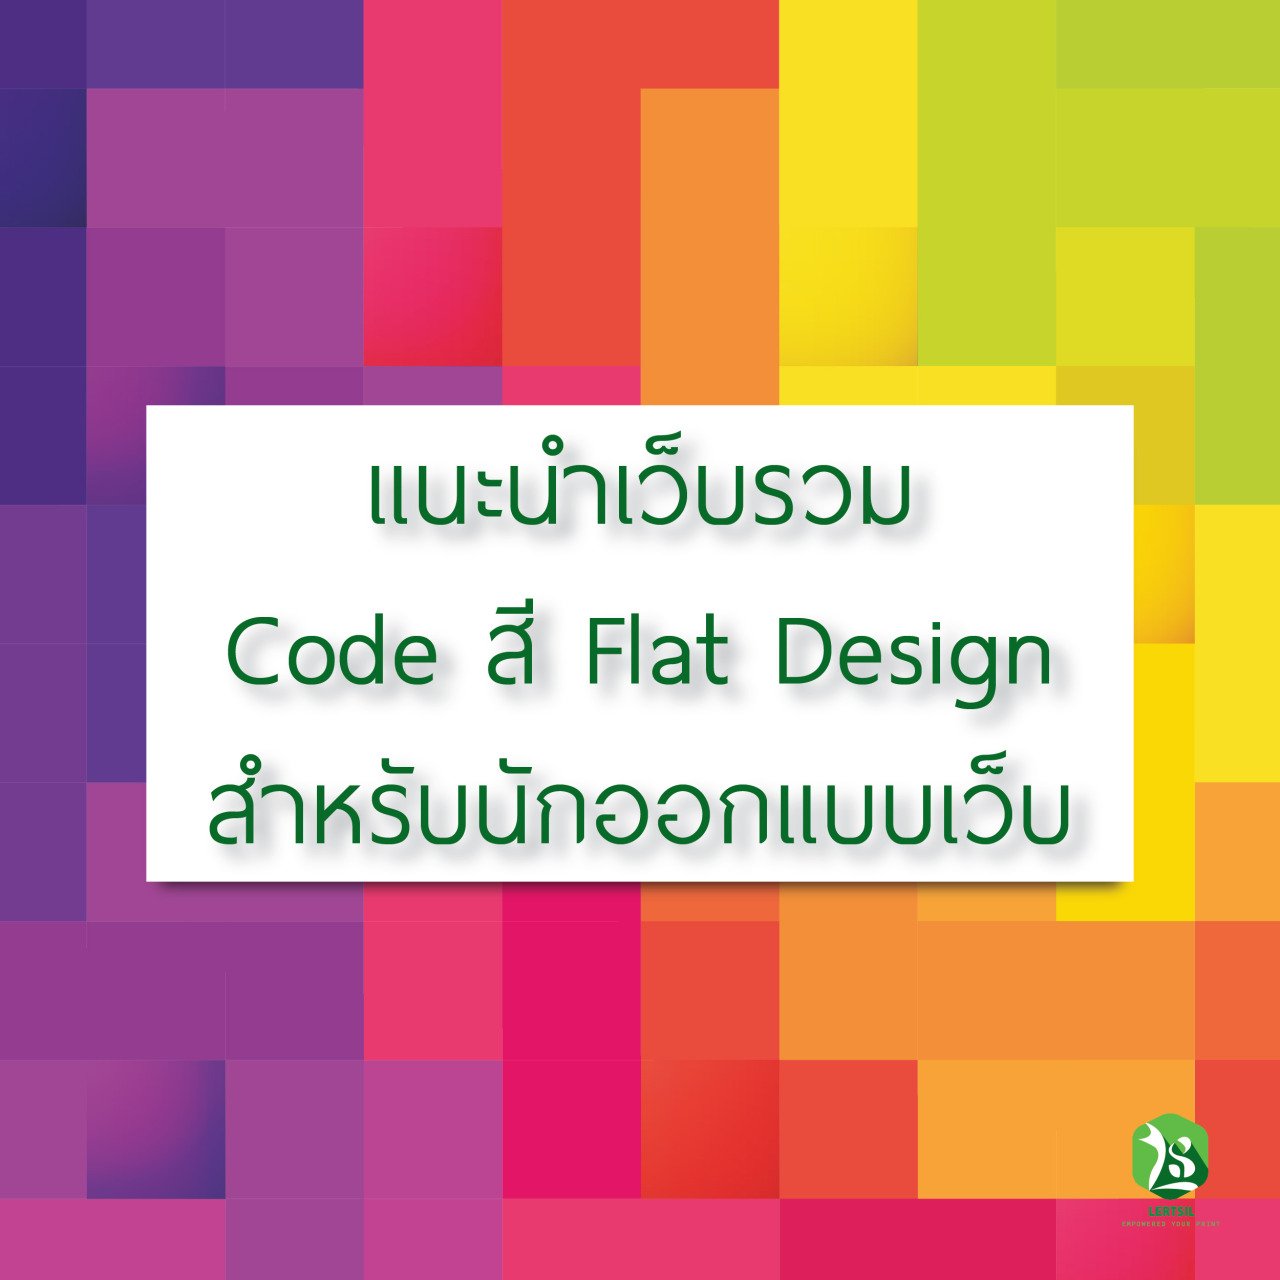 เเนะนำเว็บรวม Code สี Flat Design สำหรับนักออกเเเบบเว็บ